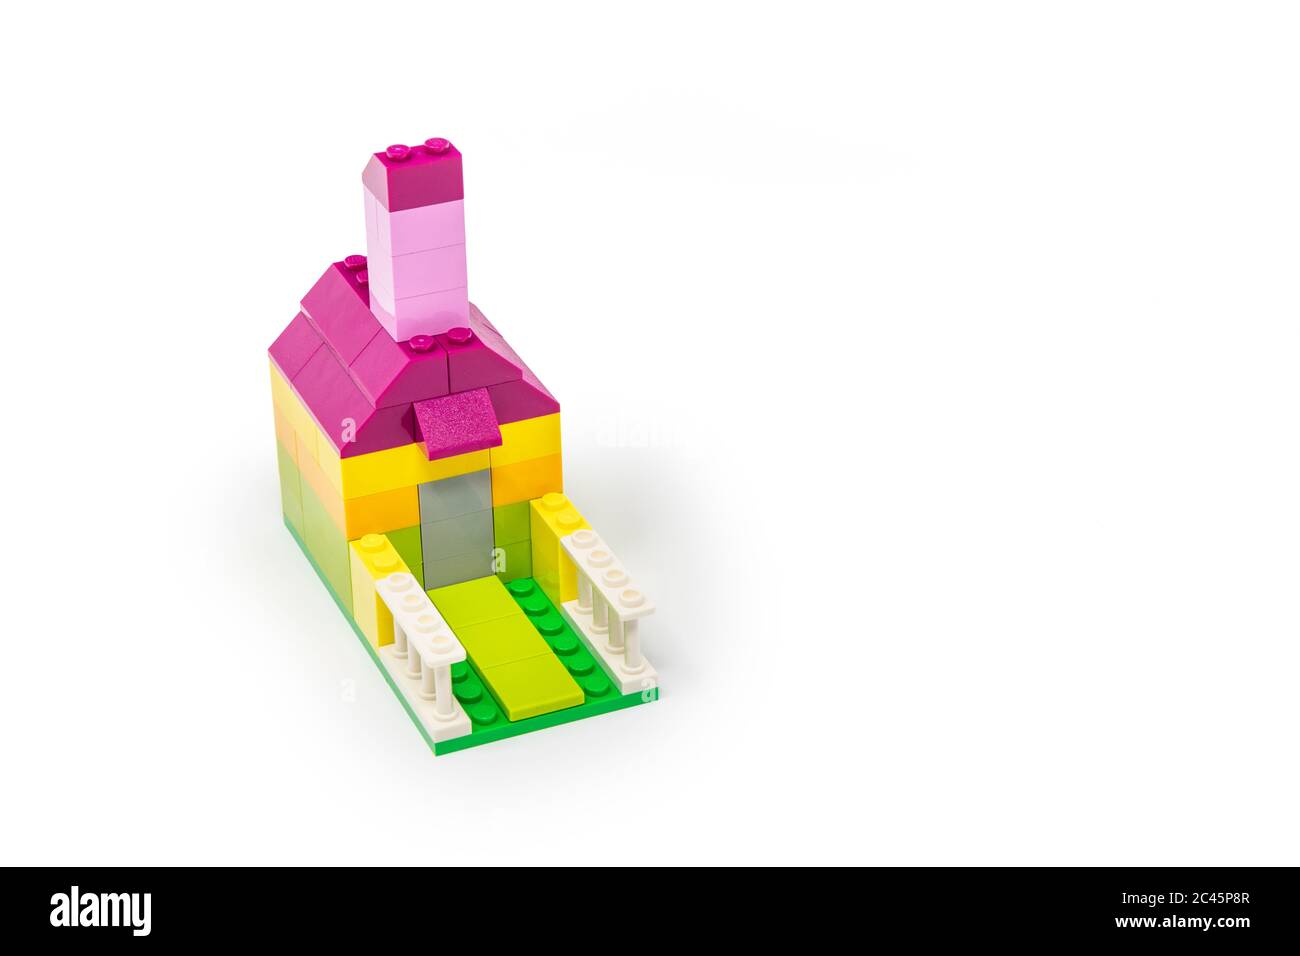 15. Mai 2019 - Rom, Italien - Lego Haus aus klassisch farbigen Bausteinen,  isoliert auf weiß. Konzept von Haus, Bau, Investitionen, Einsparungen  Stockfotografie - Alamy